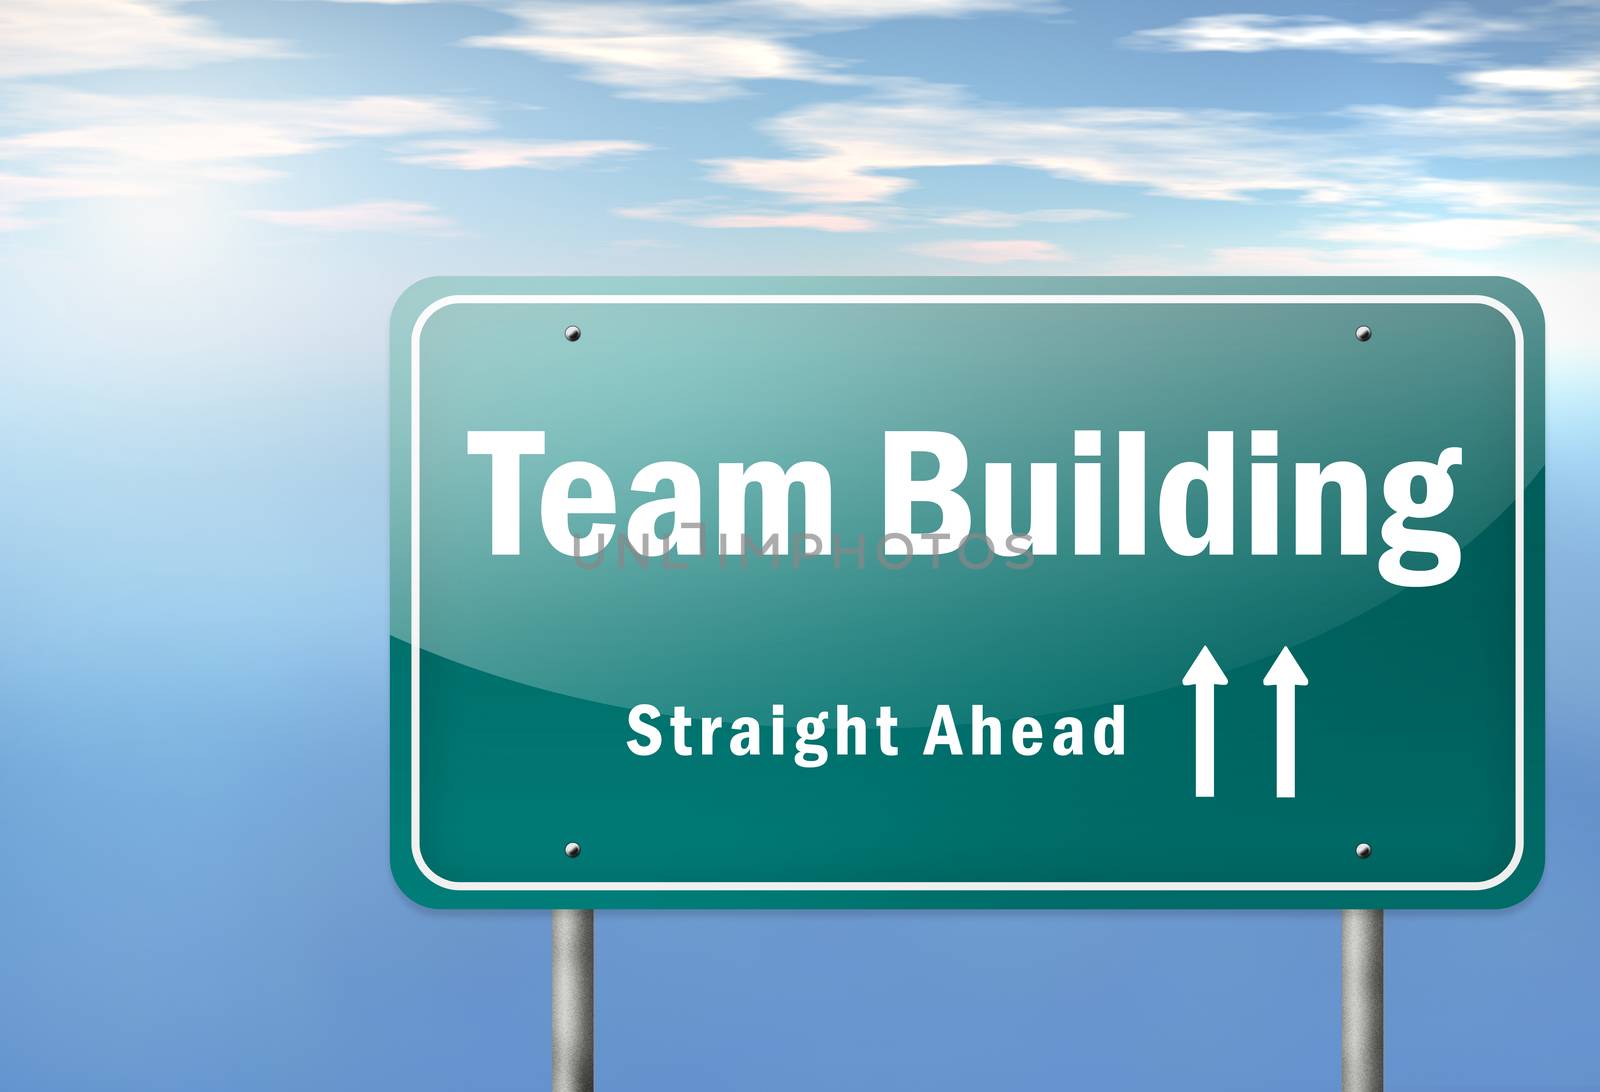 Highway Signpost "Team Building"